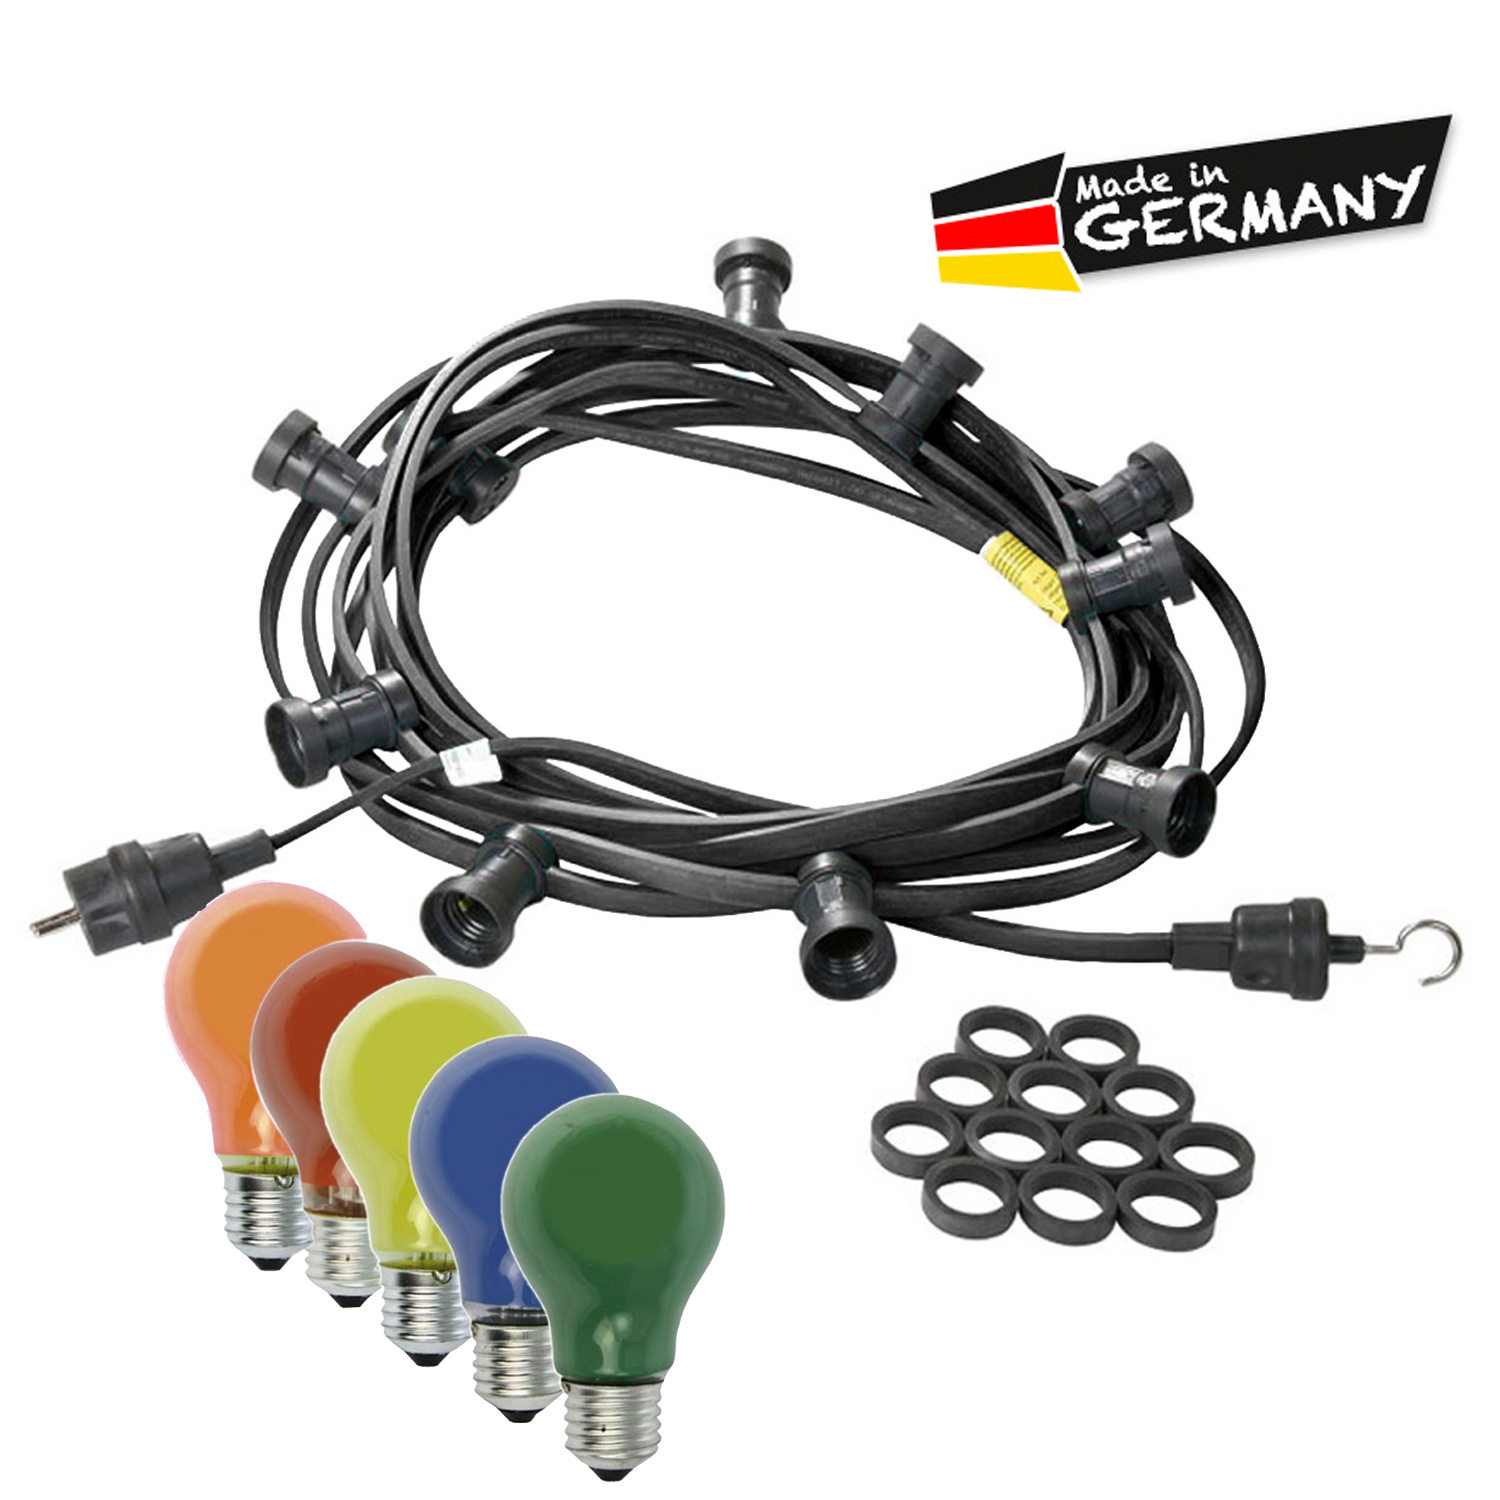 Illu-/Partylichterkette 10m - Außenlichterkette schwarz - Made in Germany - 20 bunte 25W Glühlampen